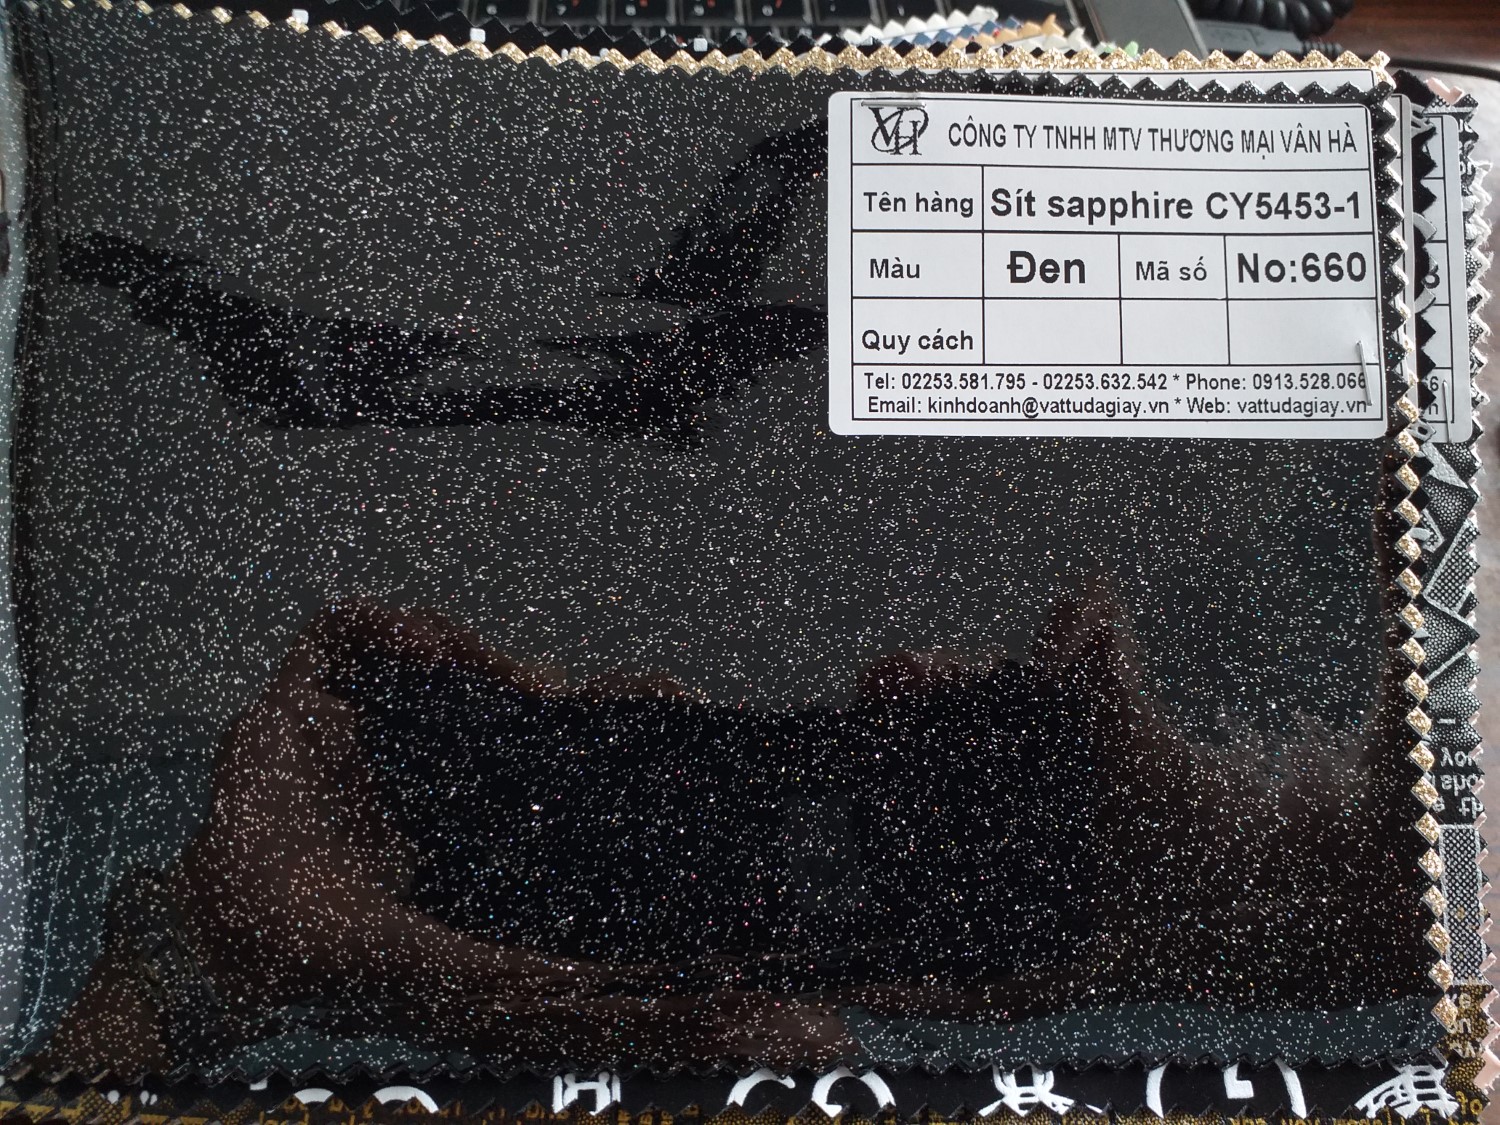 sít sapphire cy5453 1 đen mã 660 - Sít sapphire CY5453-1 đen mã 660